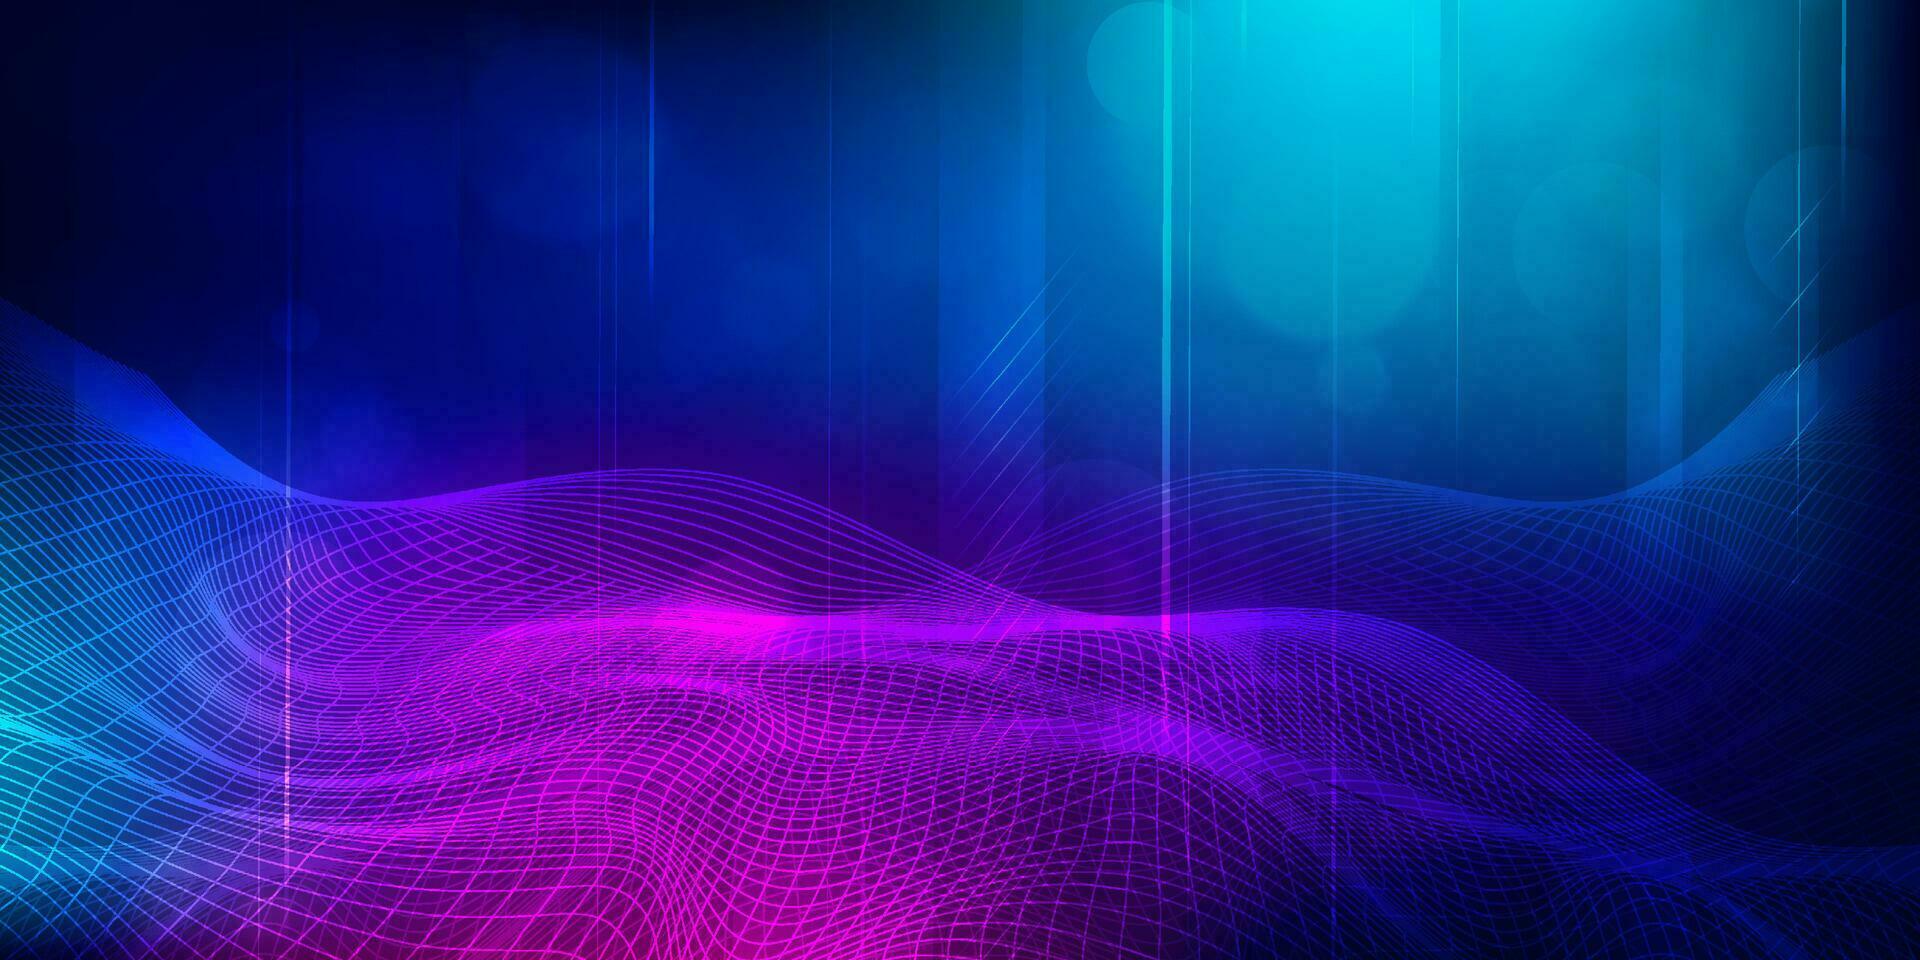 Digital Technologie futuristisch Internet Netzwerk Verbindung Blau lila Hintergrund, abstrakt Cyber Information Kommunikation, ai groß Daten Wissenschaft, Innovation Zukunft Technik, Linie Punkt Illustration Vektor